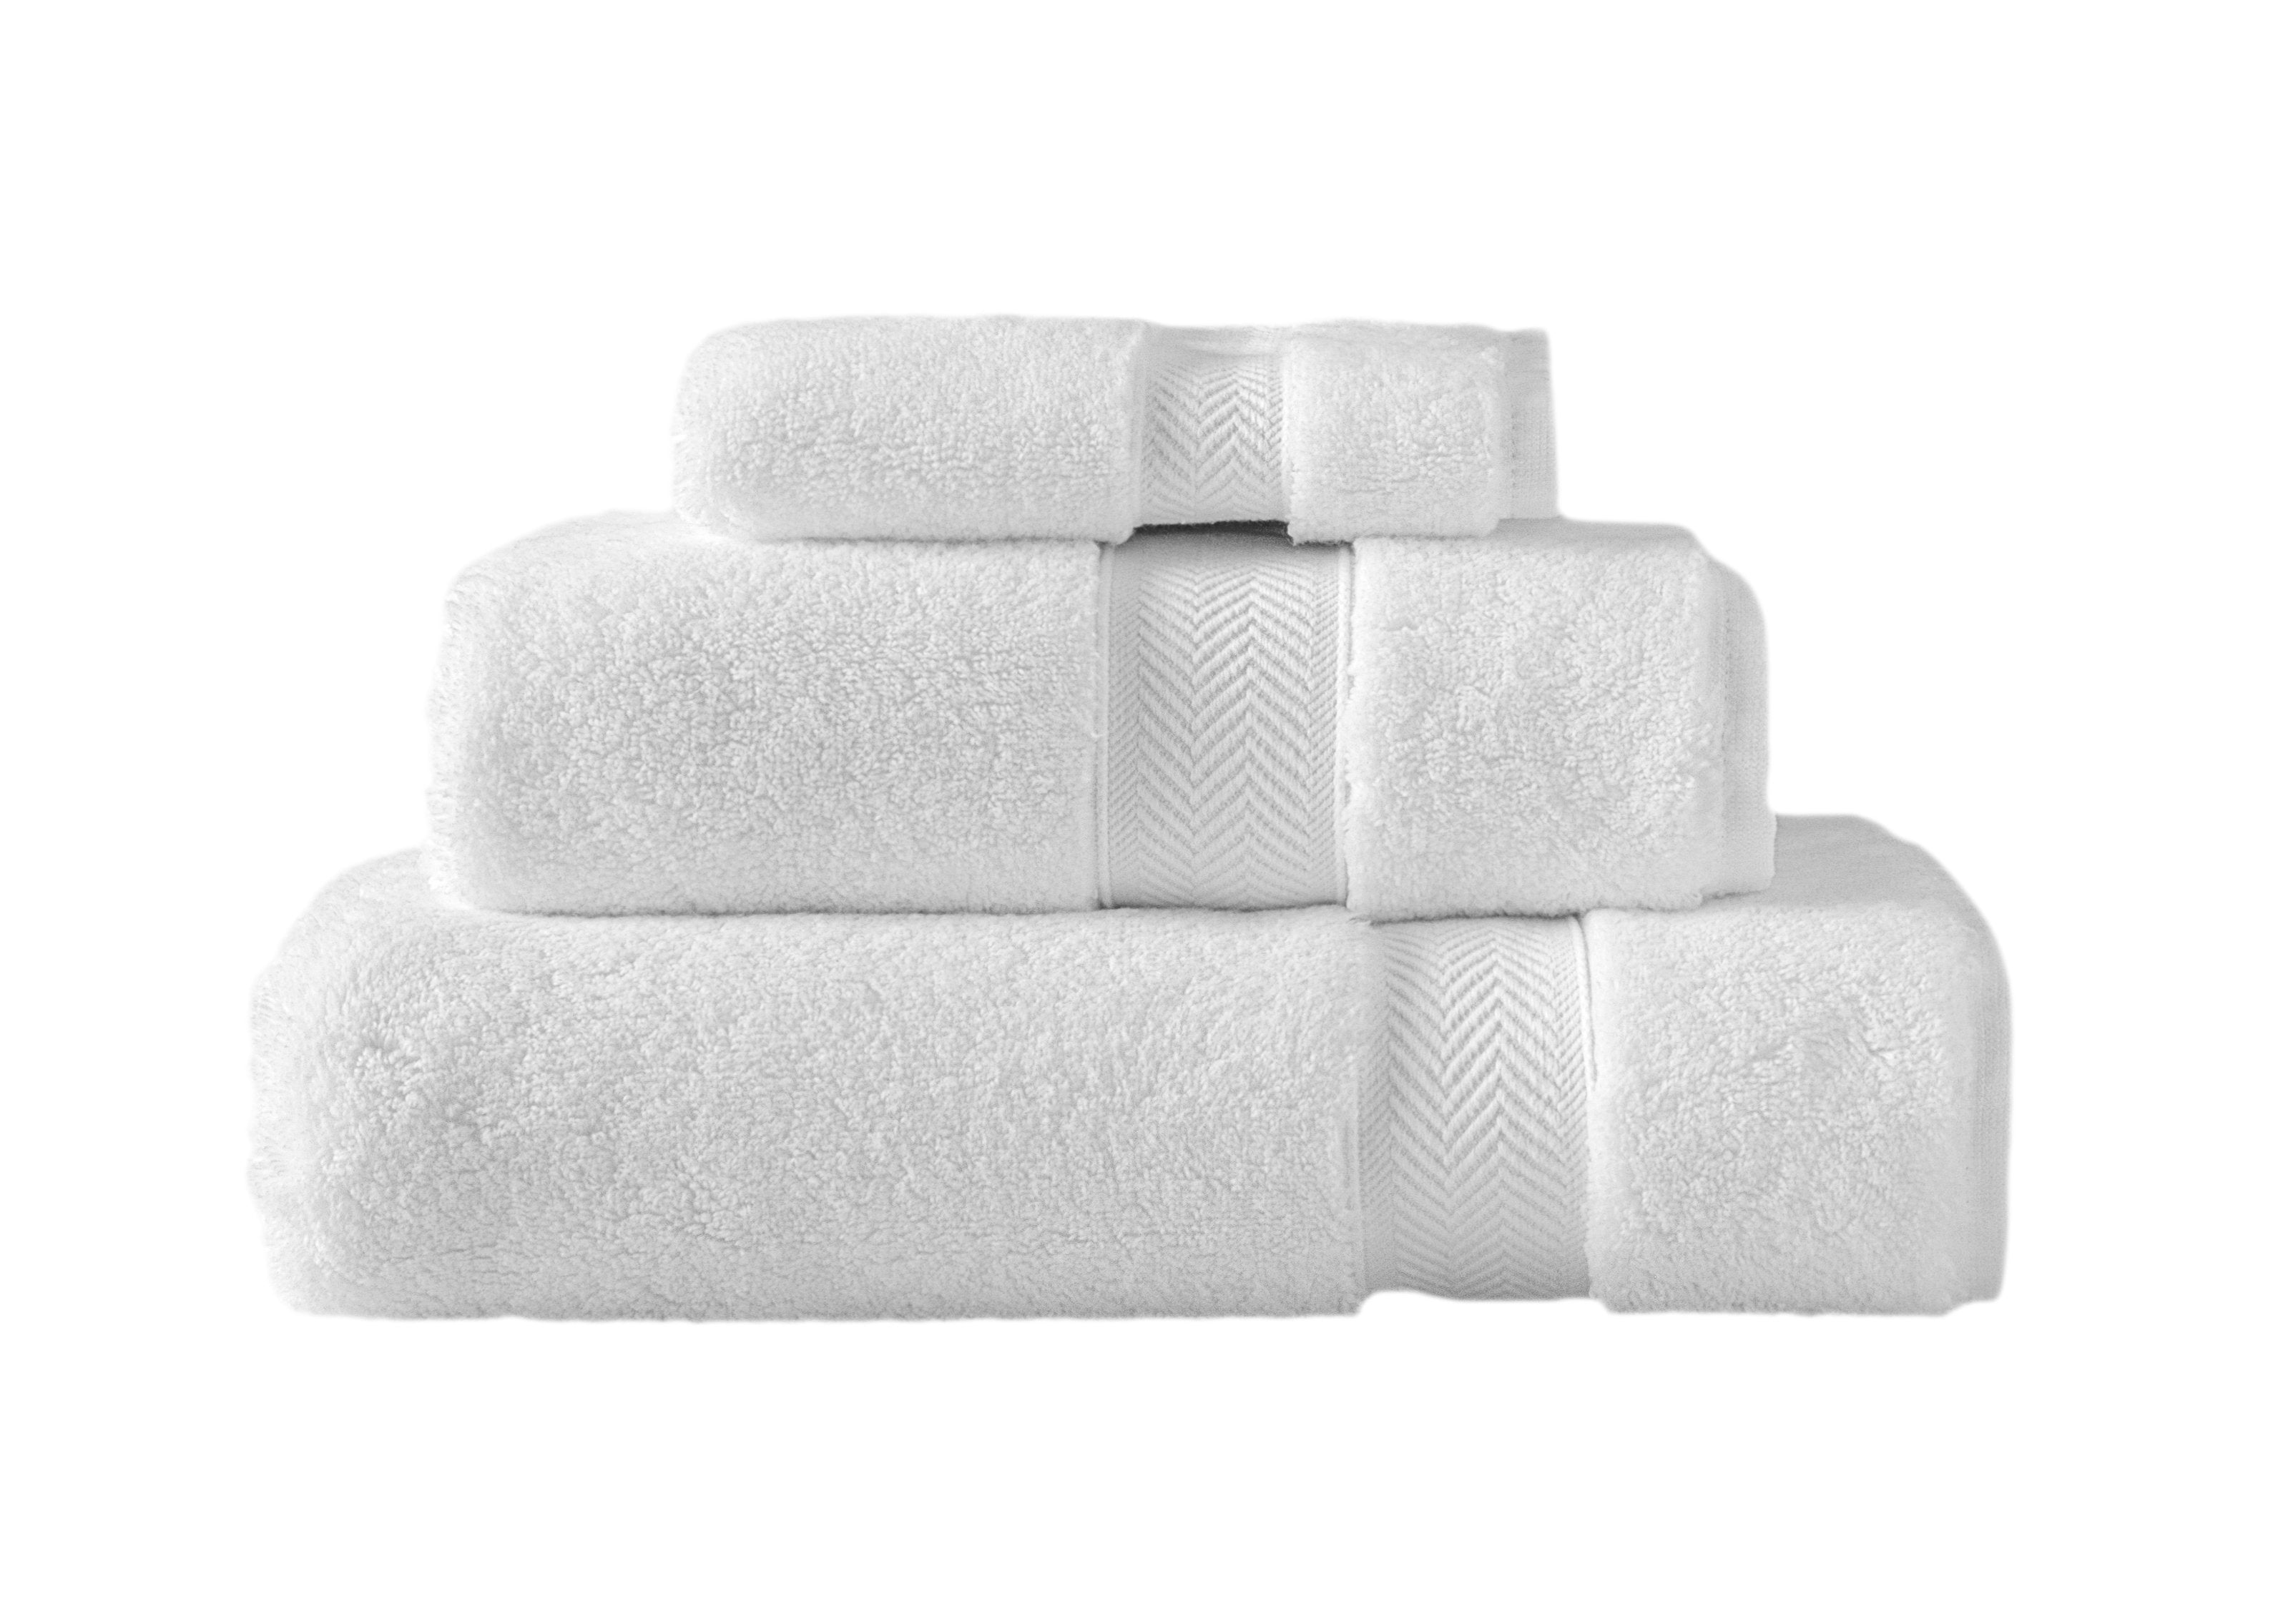 Klassic Collection 3 PK Towels Set - White